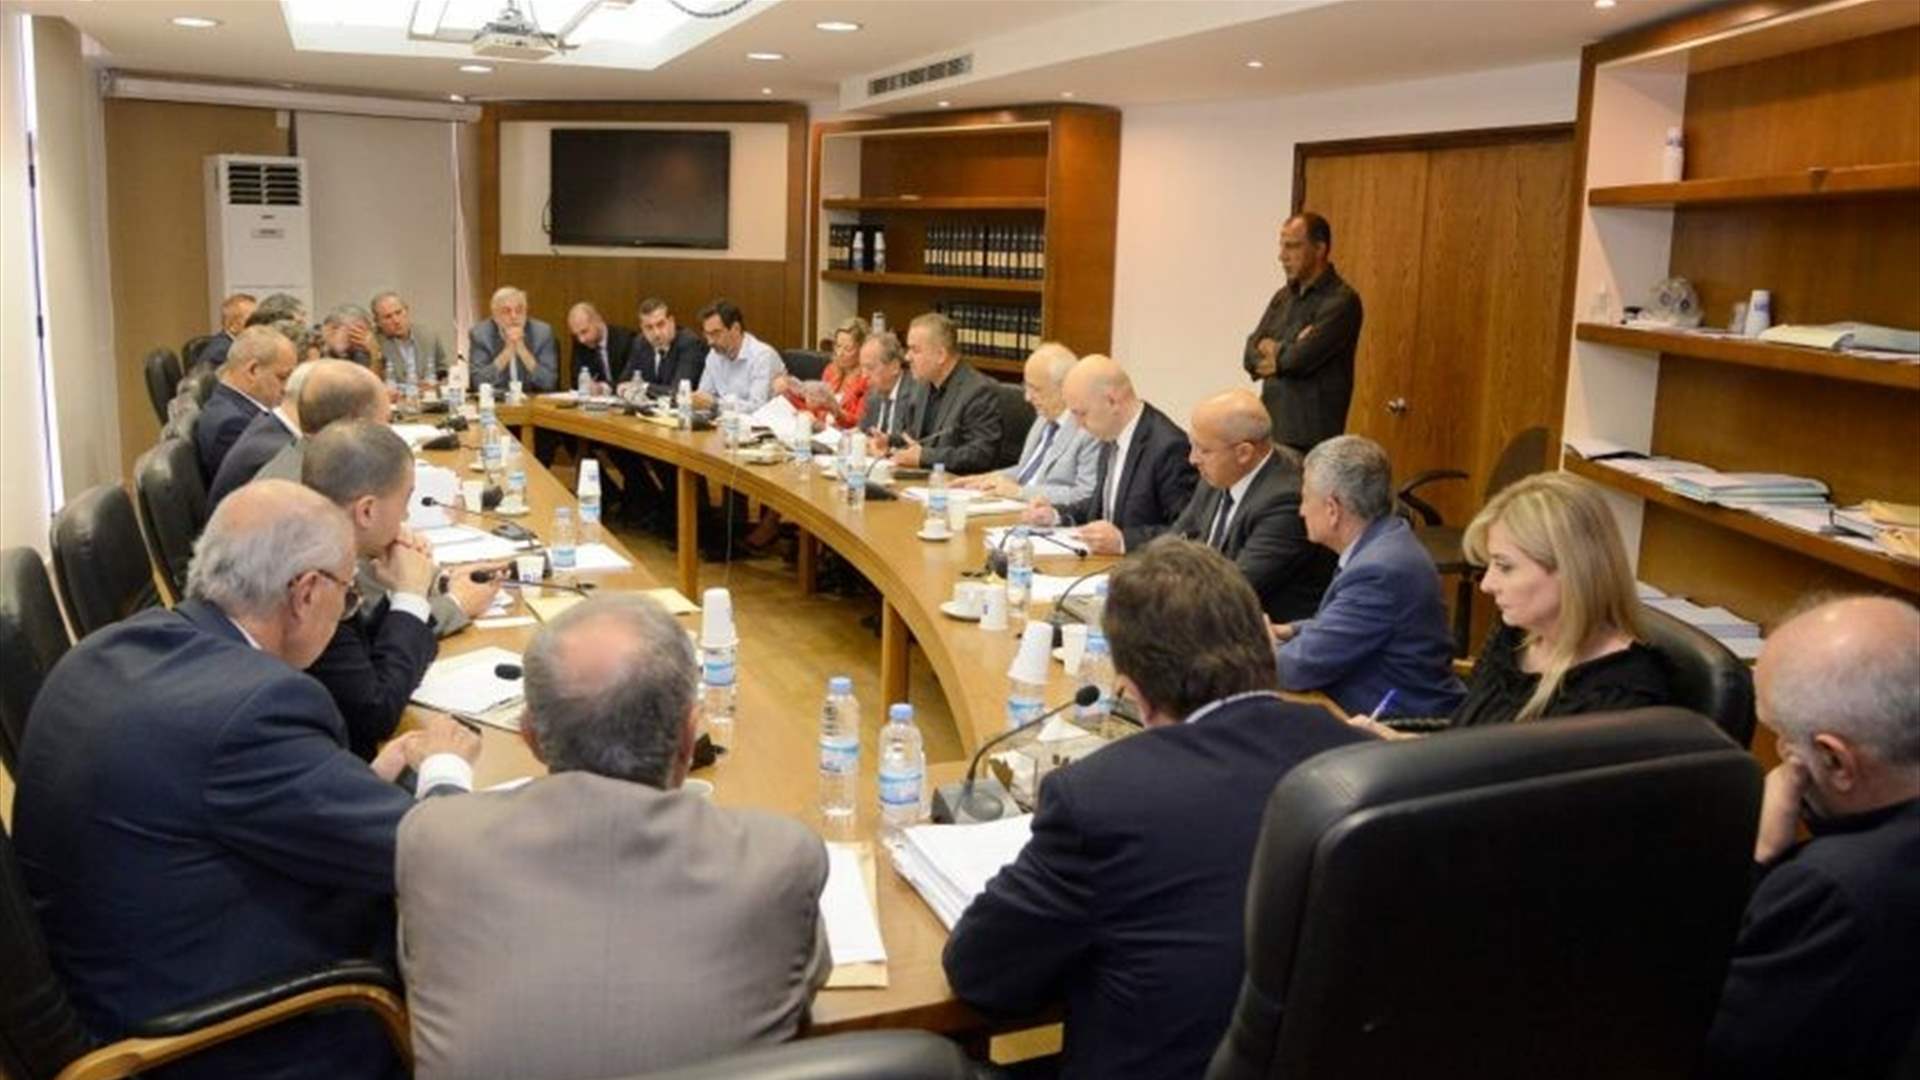 لجنة المال والموازنة أقرت قانون الصندوق السيادي اللبناني للنفط والغاز وكنعان يشرح تفاصيله في مؤتمر صحافي الأربعاء